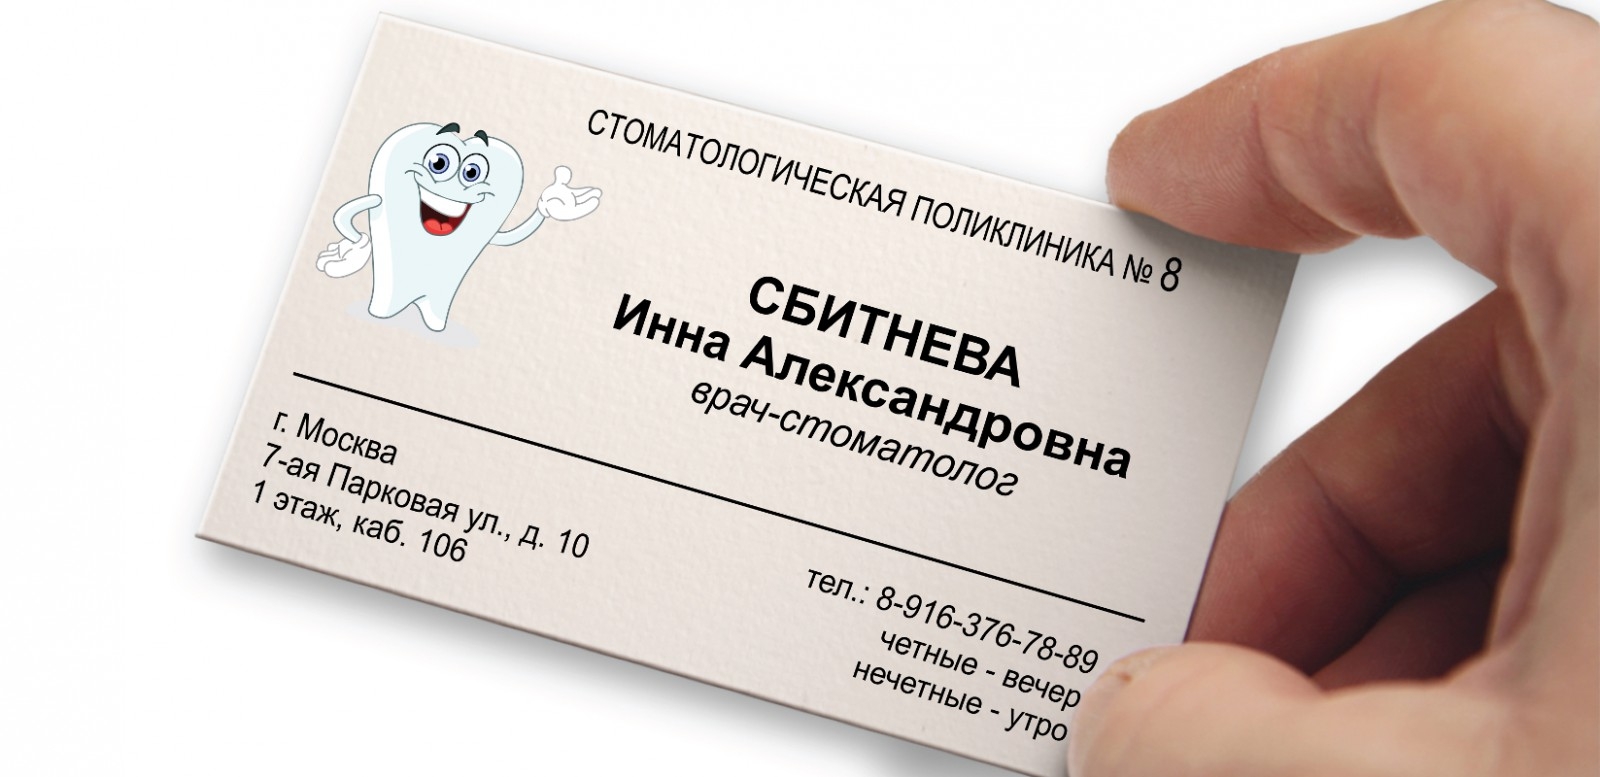 Создание визиток на русском языке. Визитка образец. Визитная карточка образец. Простой сайт (визитка). Визитка пример оформления.